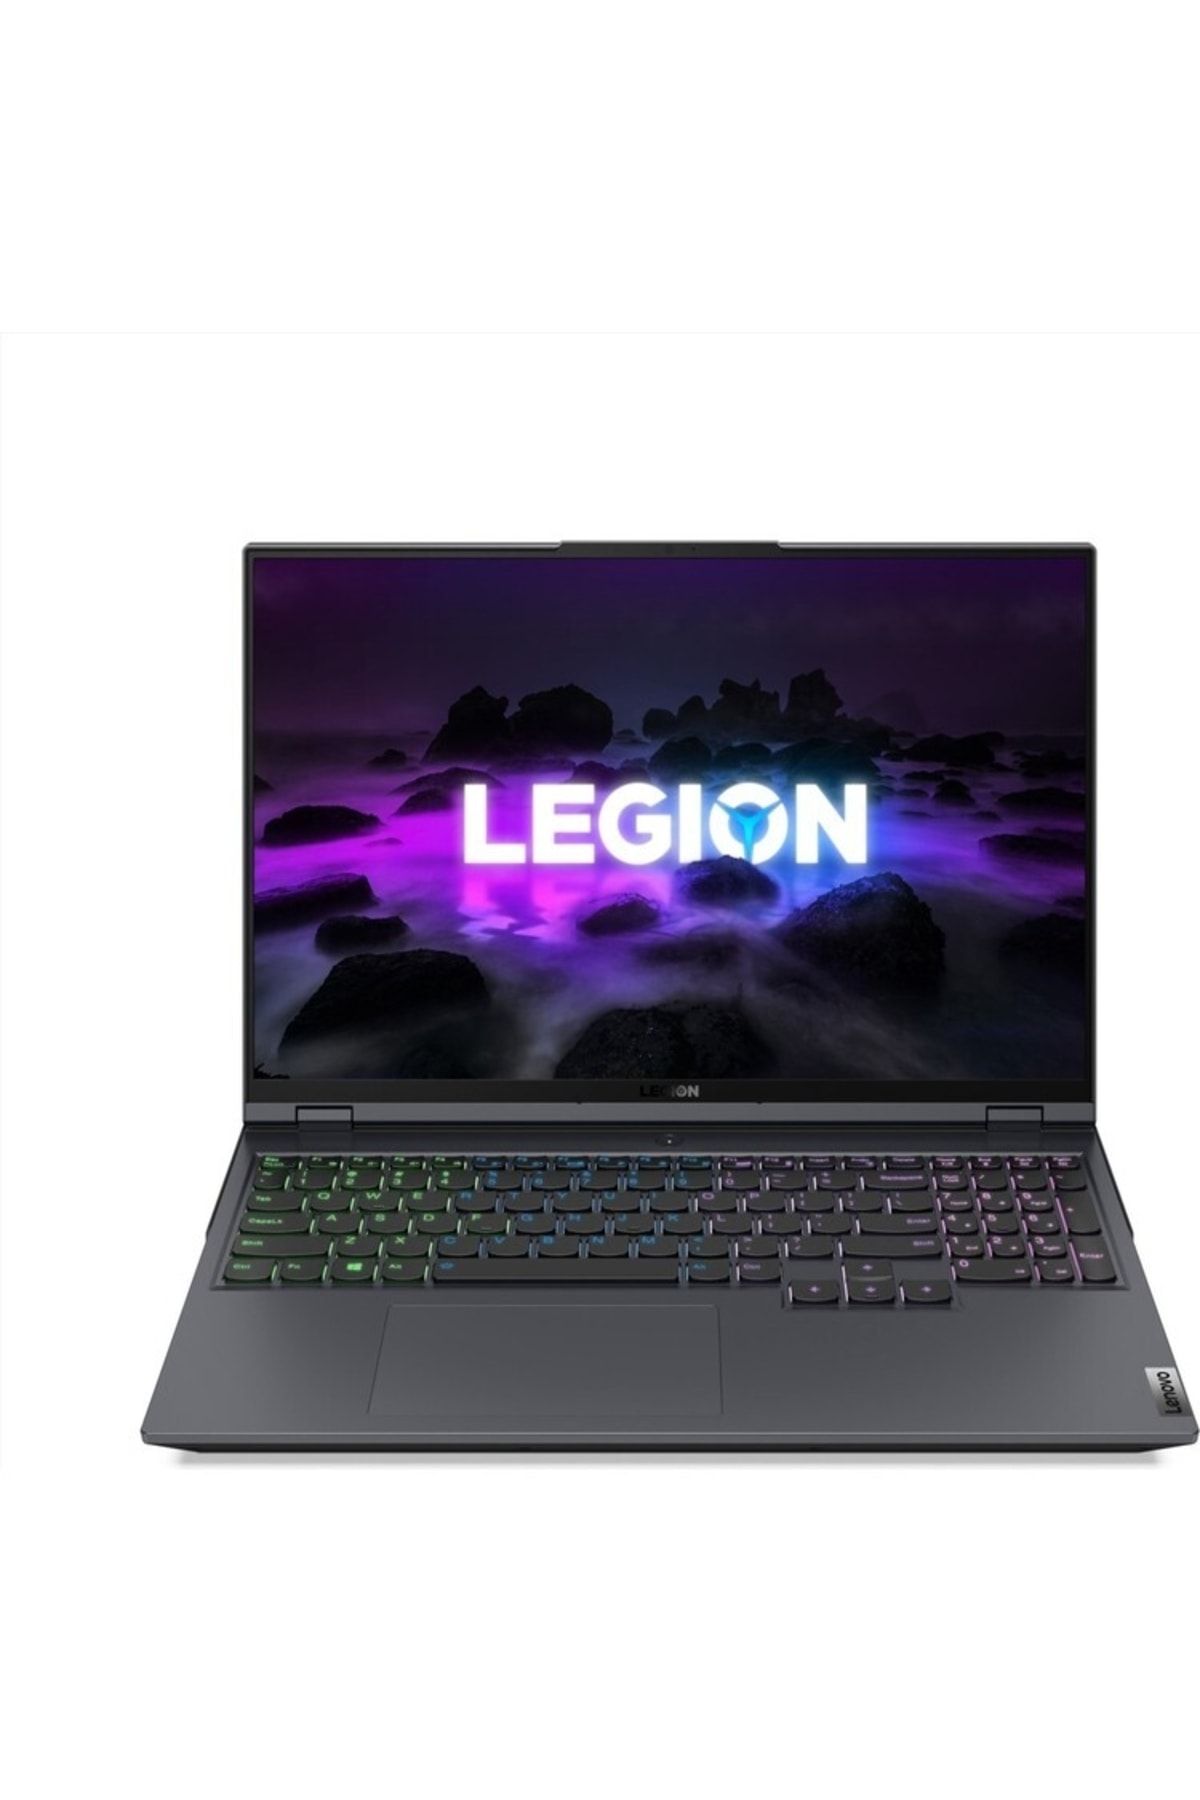 LENOVO Legion 5 Pro Intel Core I7 11800h 32gb 512gb Ssd 6gb Rtx3060 W10h 16" Wqxga 82jd002atx01